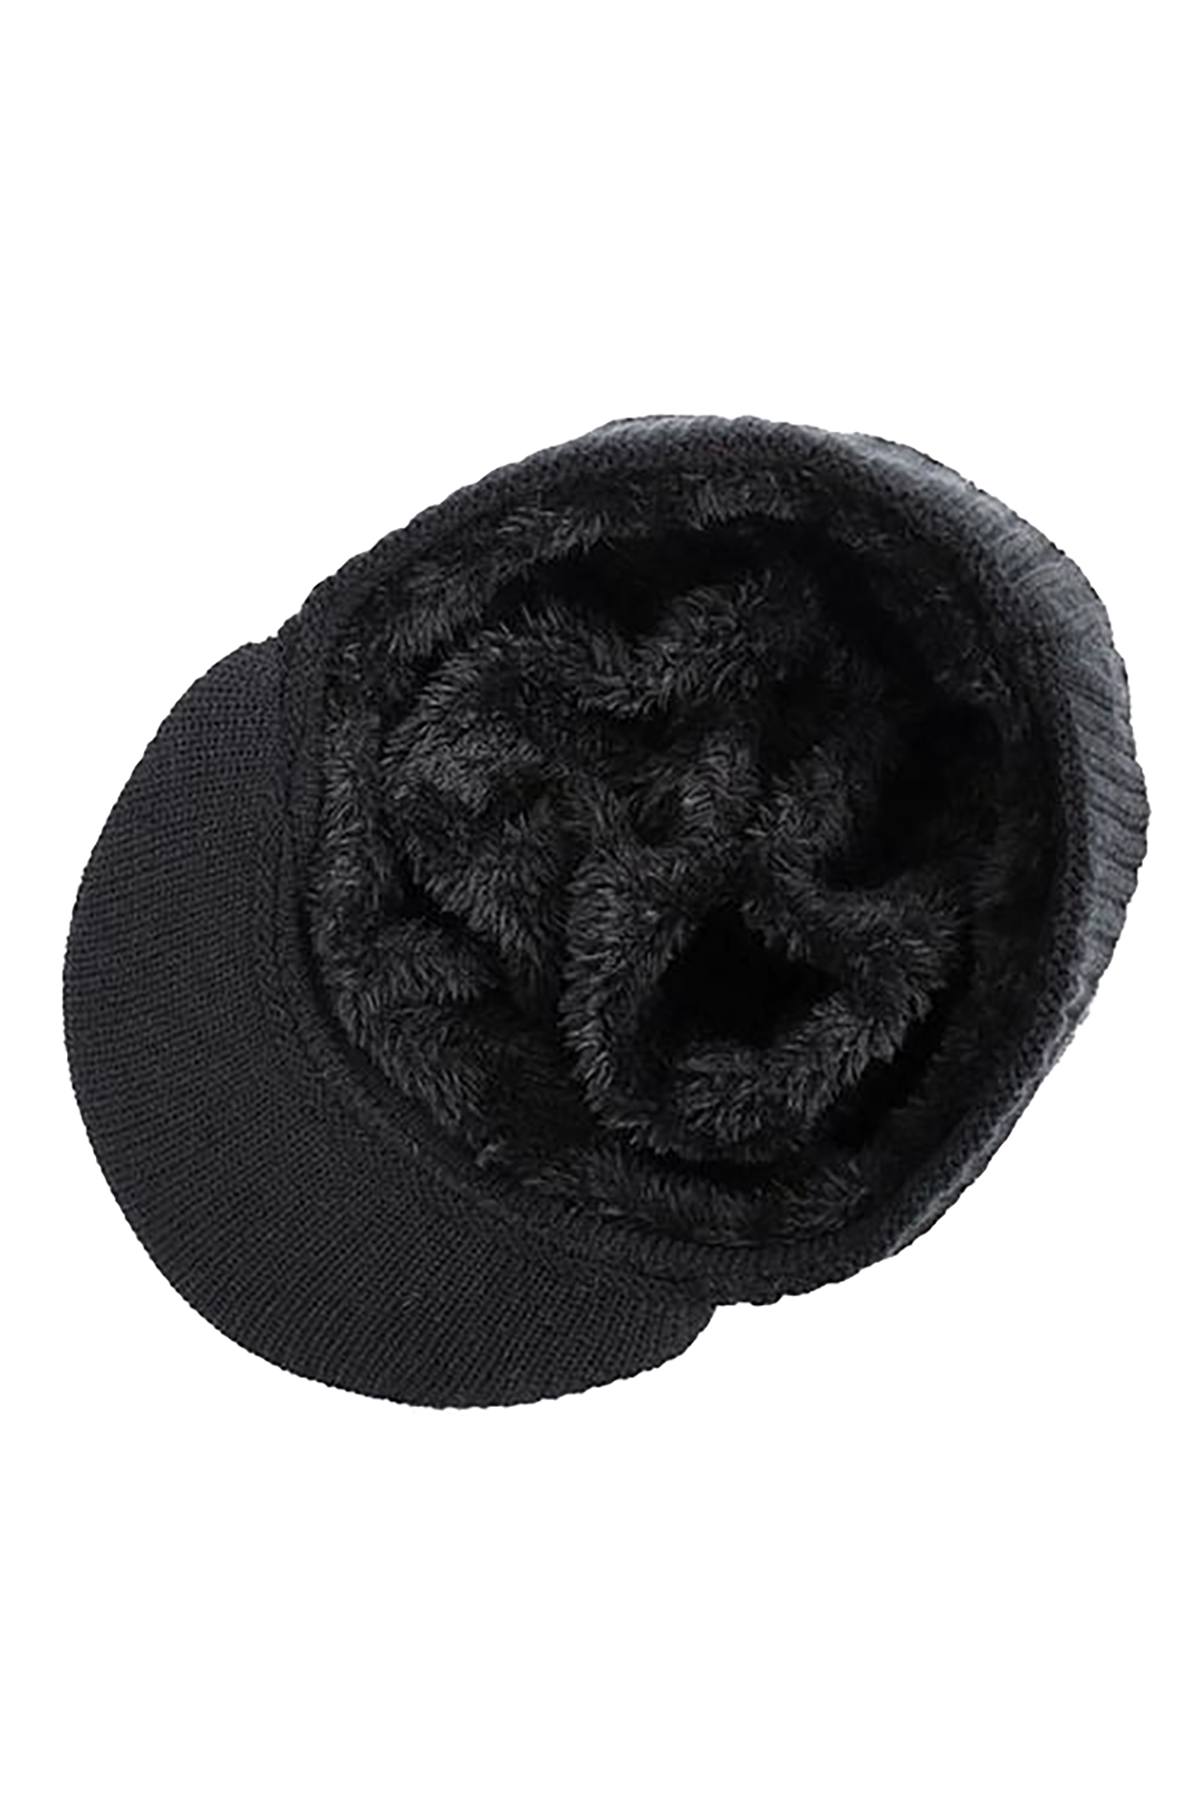 Sport All Black Knit Fleece Lined Hat & Scarf 2-Piece Set